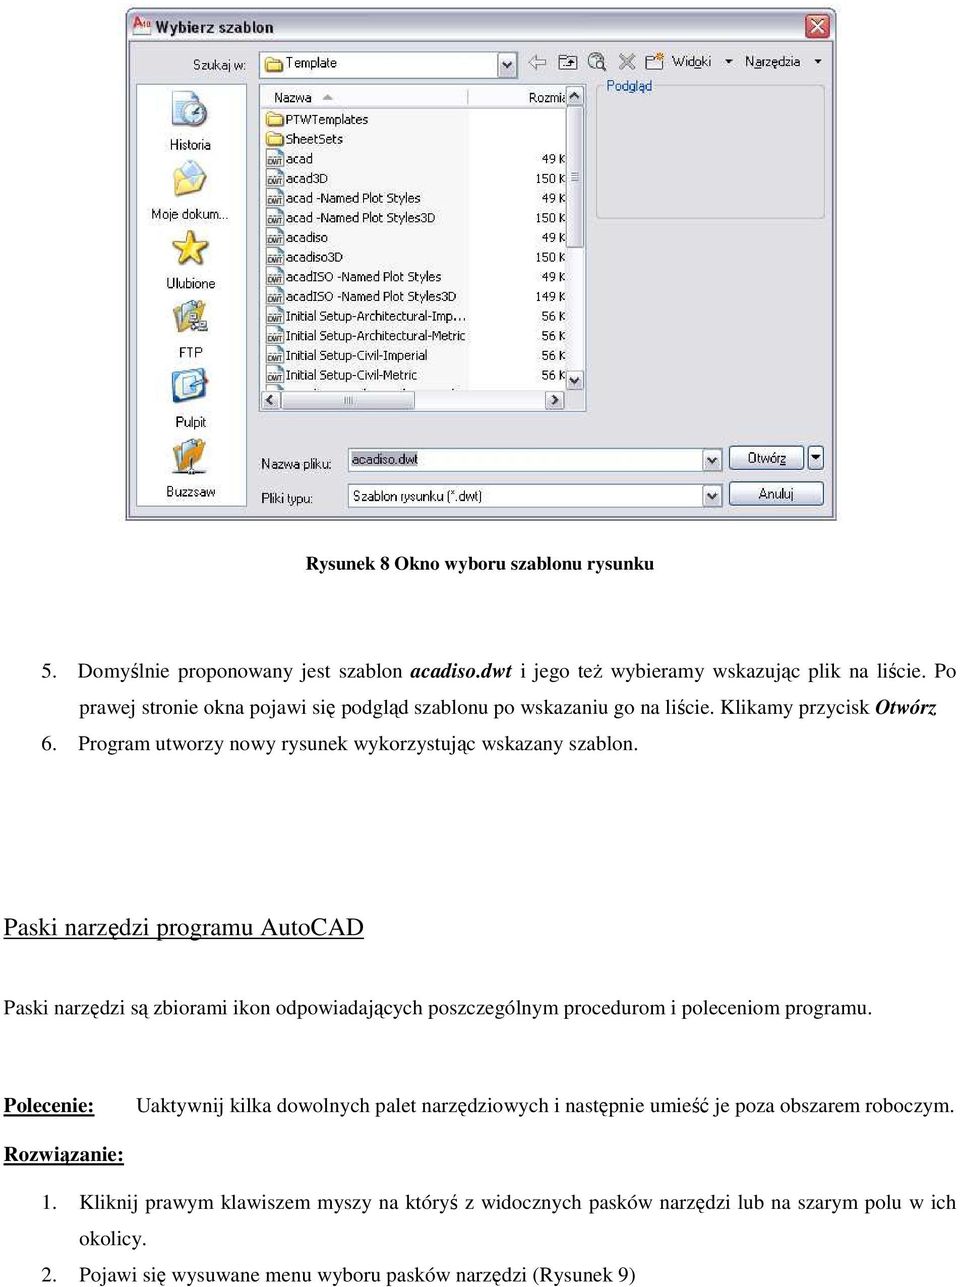 Paski narzędzi programu AutoCAD Paski narzędzi są zbiorami ikon odpowiadających poszczególnym procedurom i poleceniom programu.